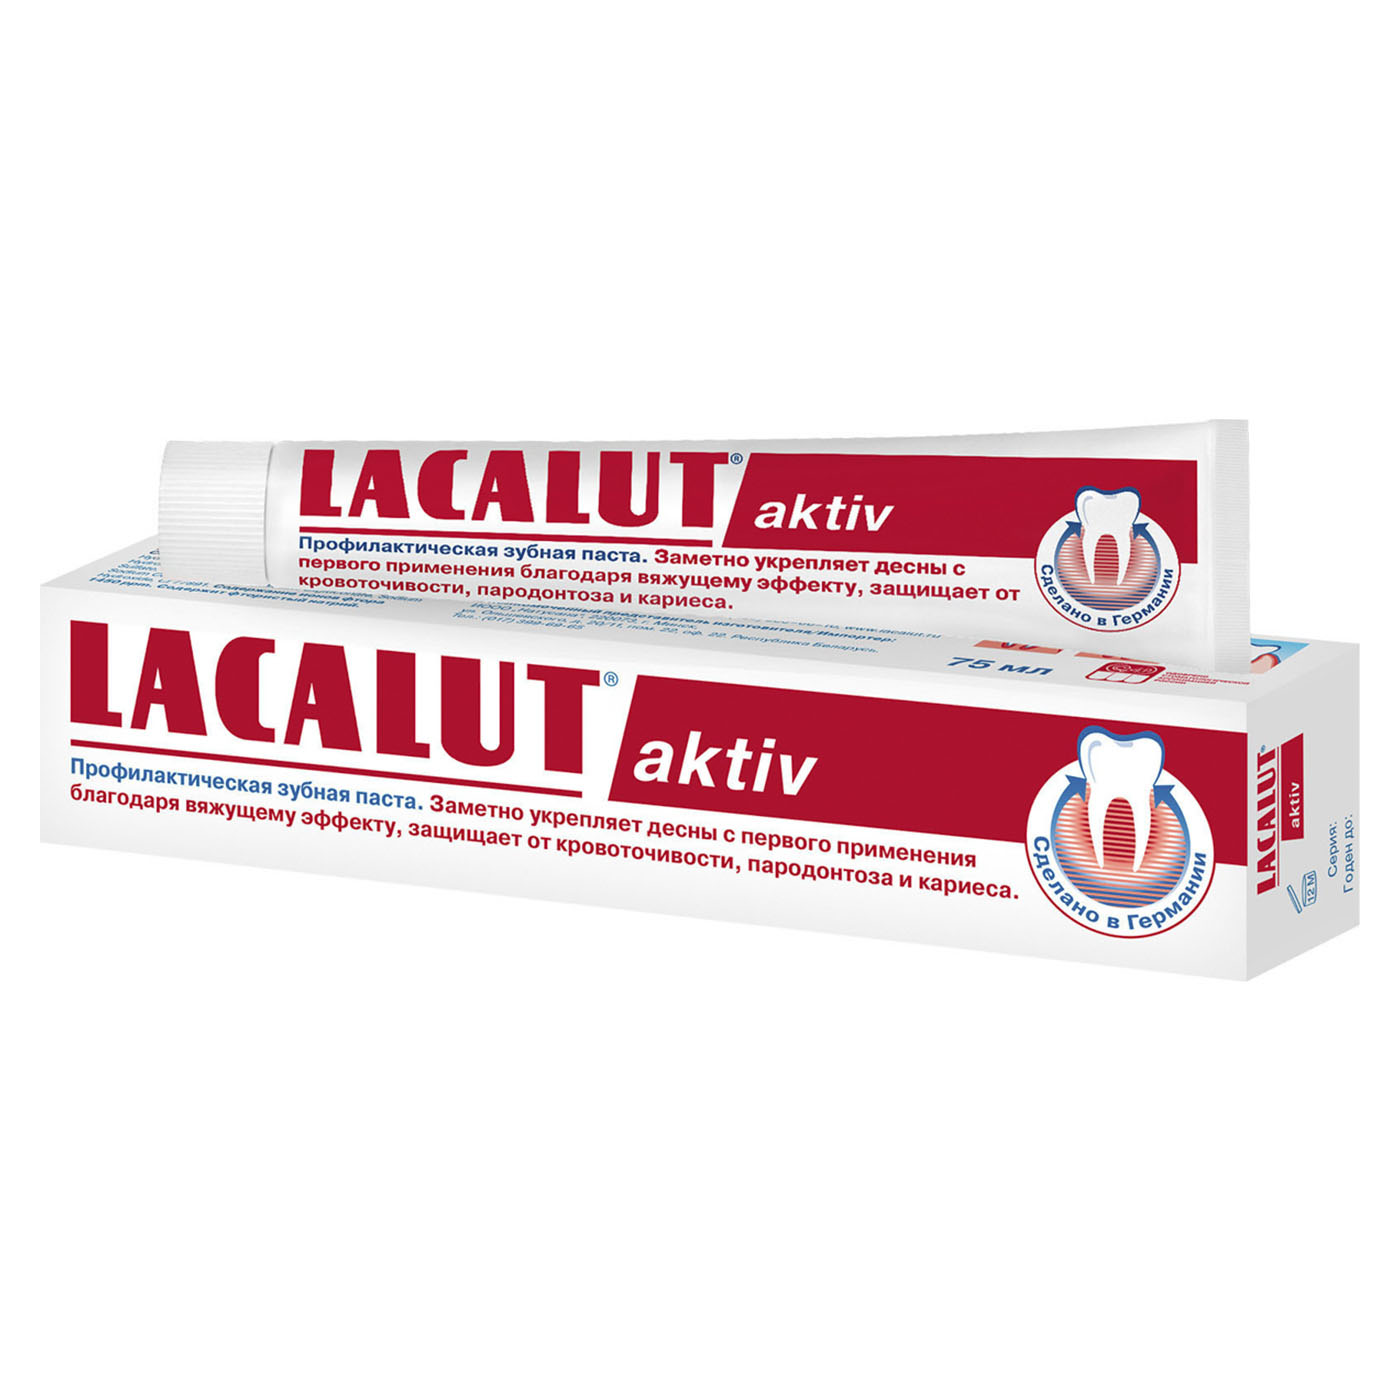 Купить Lacalut Зубная паста Актив 75 мл (Lacalut, Зубные пасты), Германия